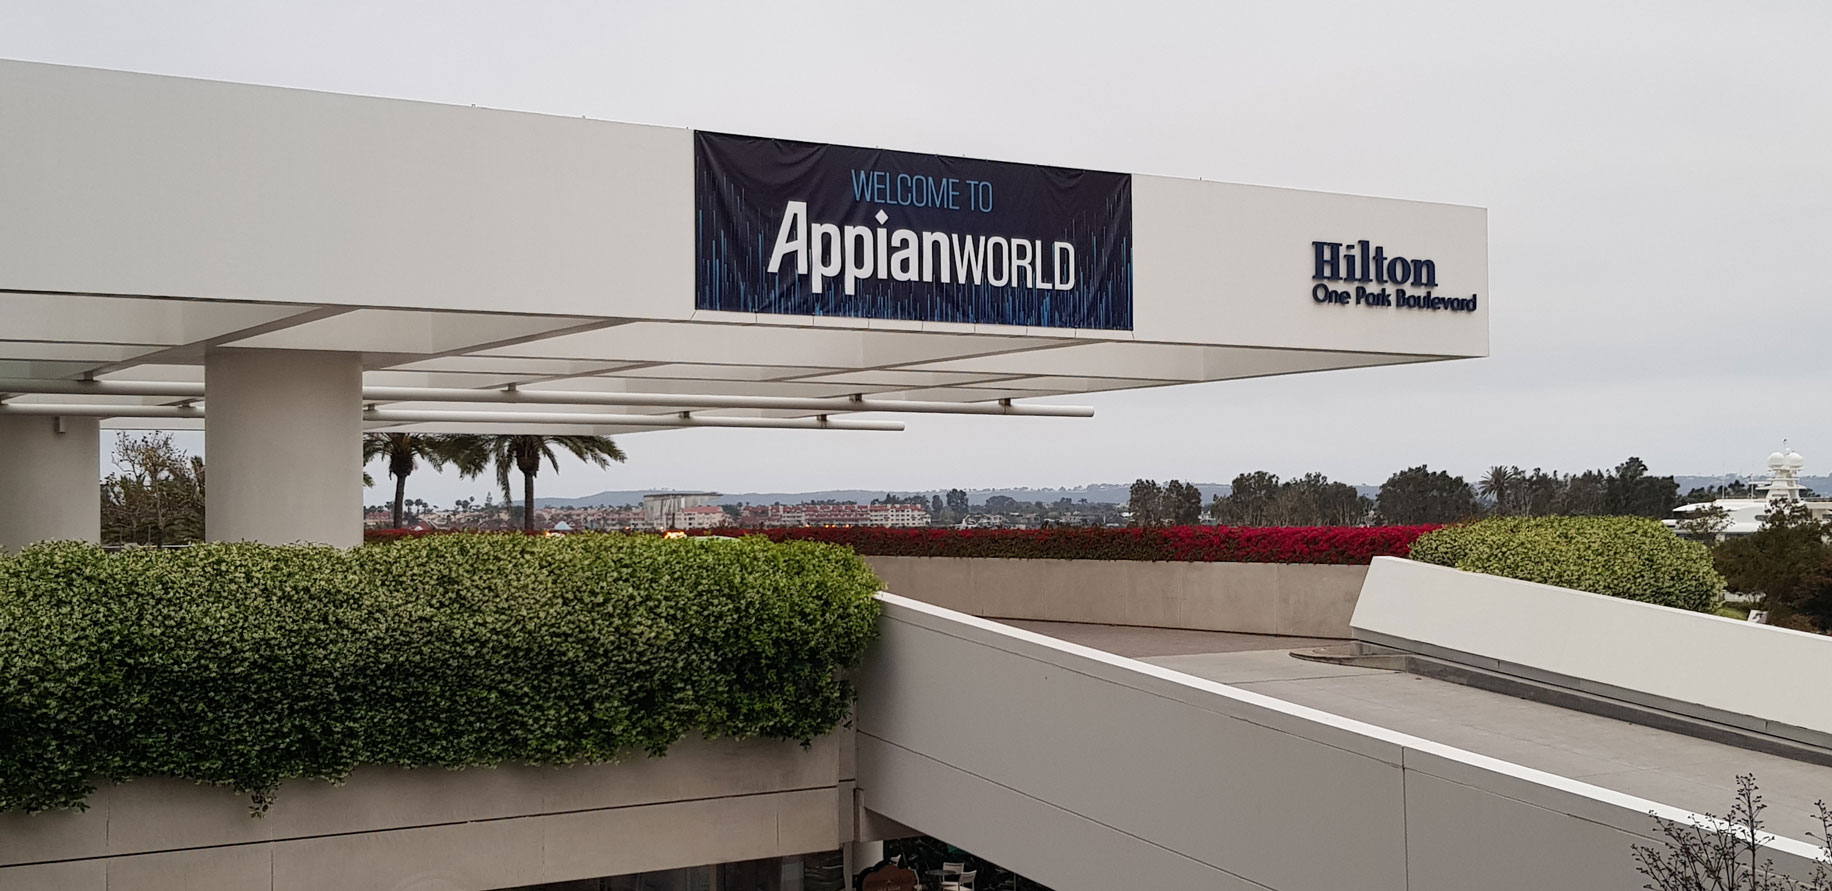 Appian World 2019, si alza l’attenzione sul low-code